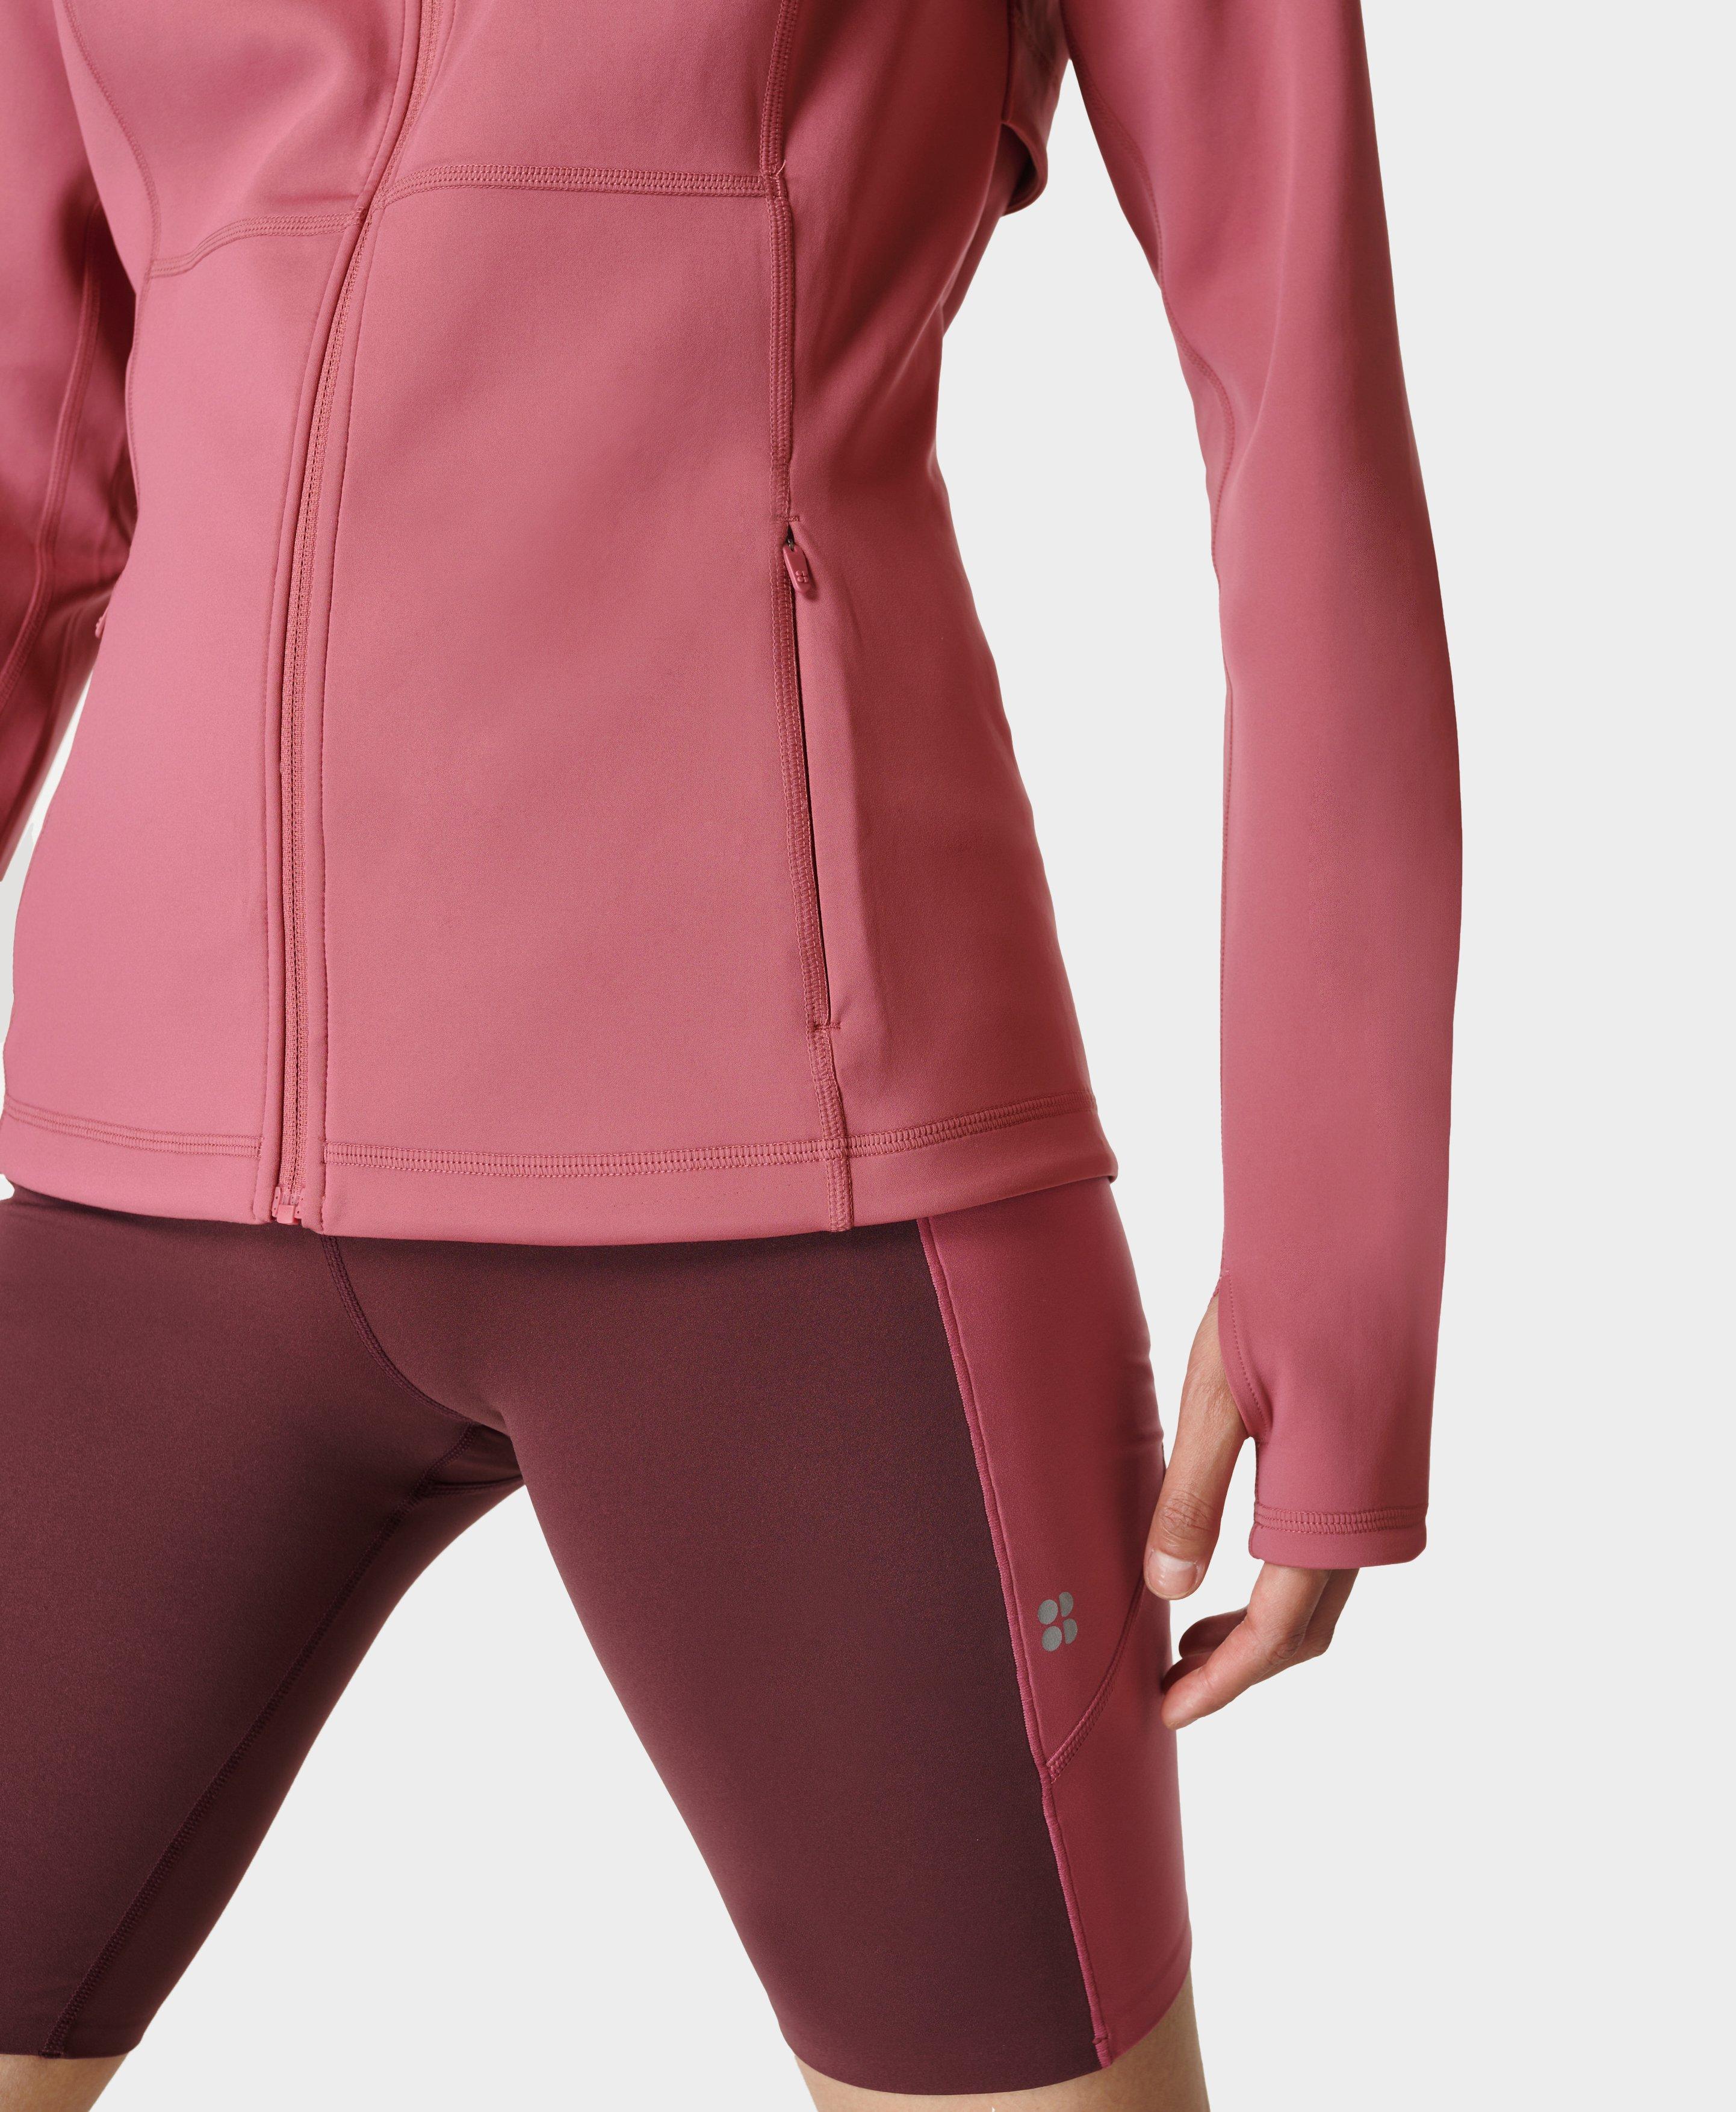 Power Boost Zip Up - Adventure Pink, Women's Jumpers, Sweatshirts &  Hoodies